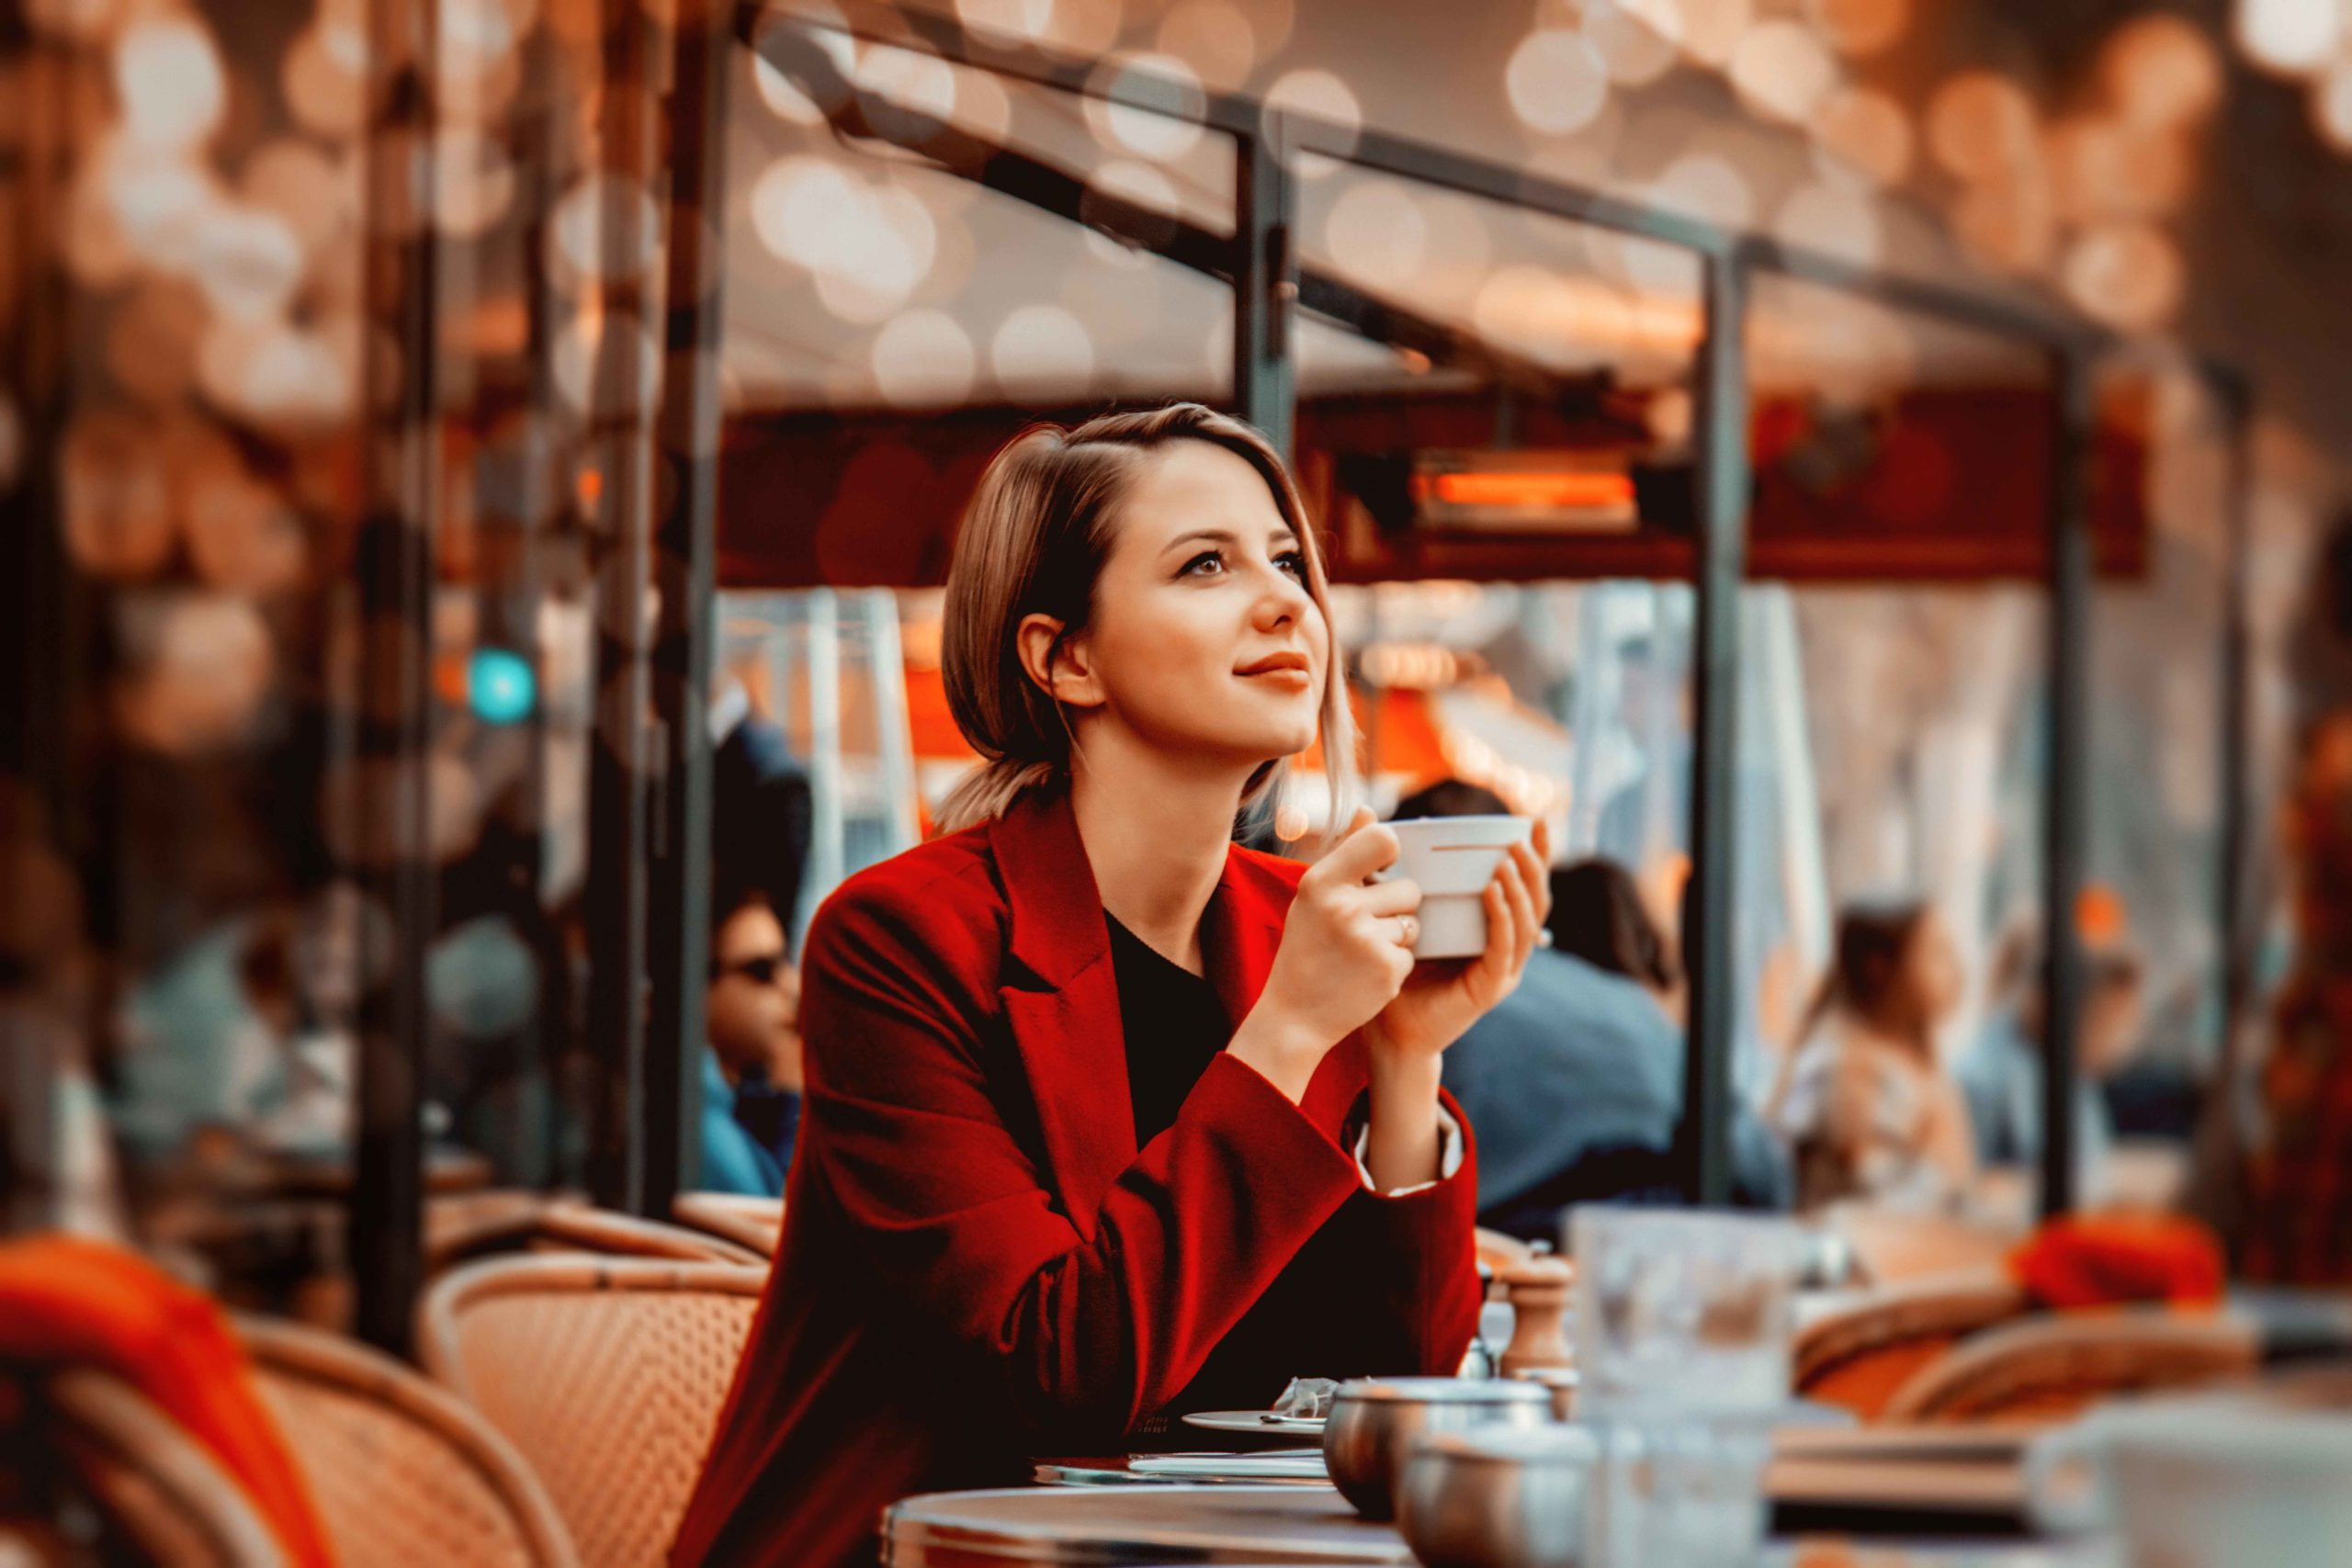 Coffee during Paris Walking Tours. French Lifestyle. Photo by Masson-Simon via Envato Elements